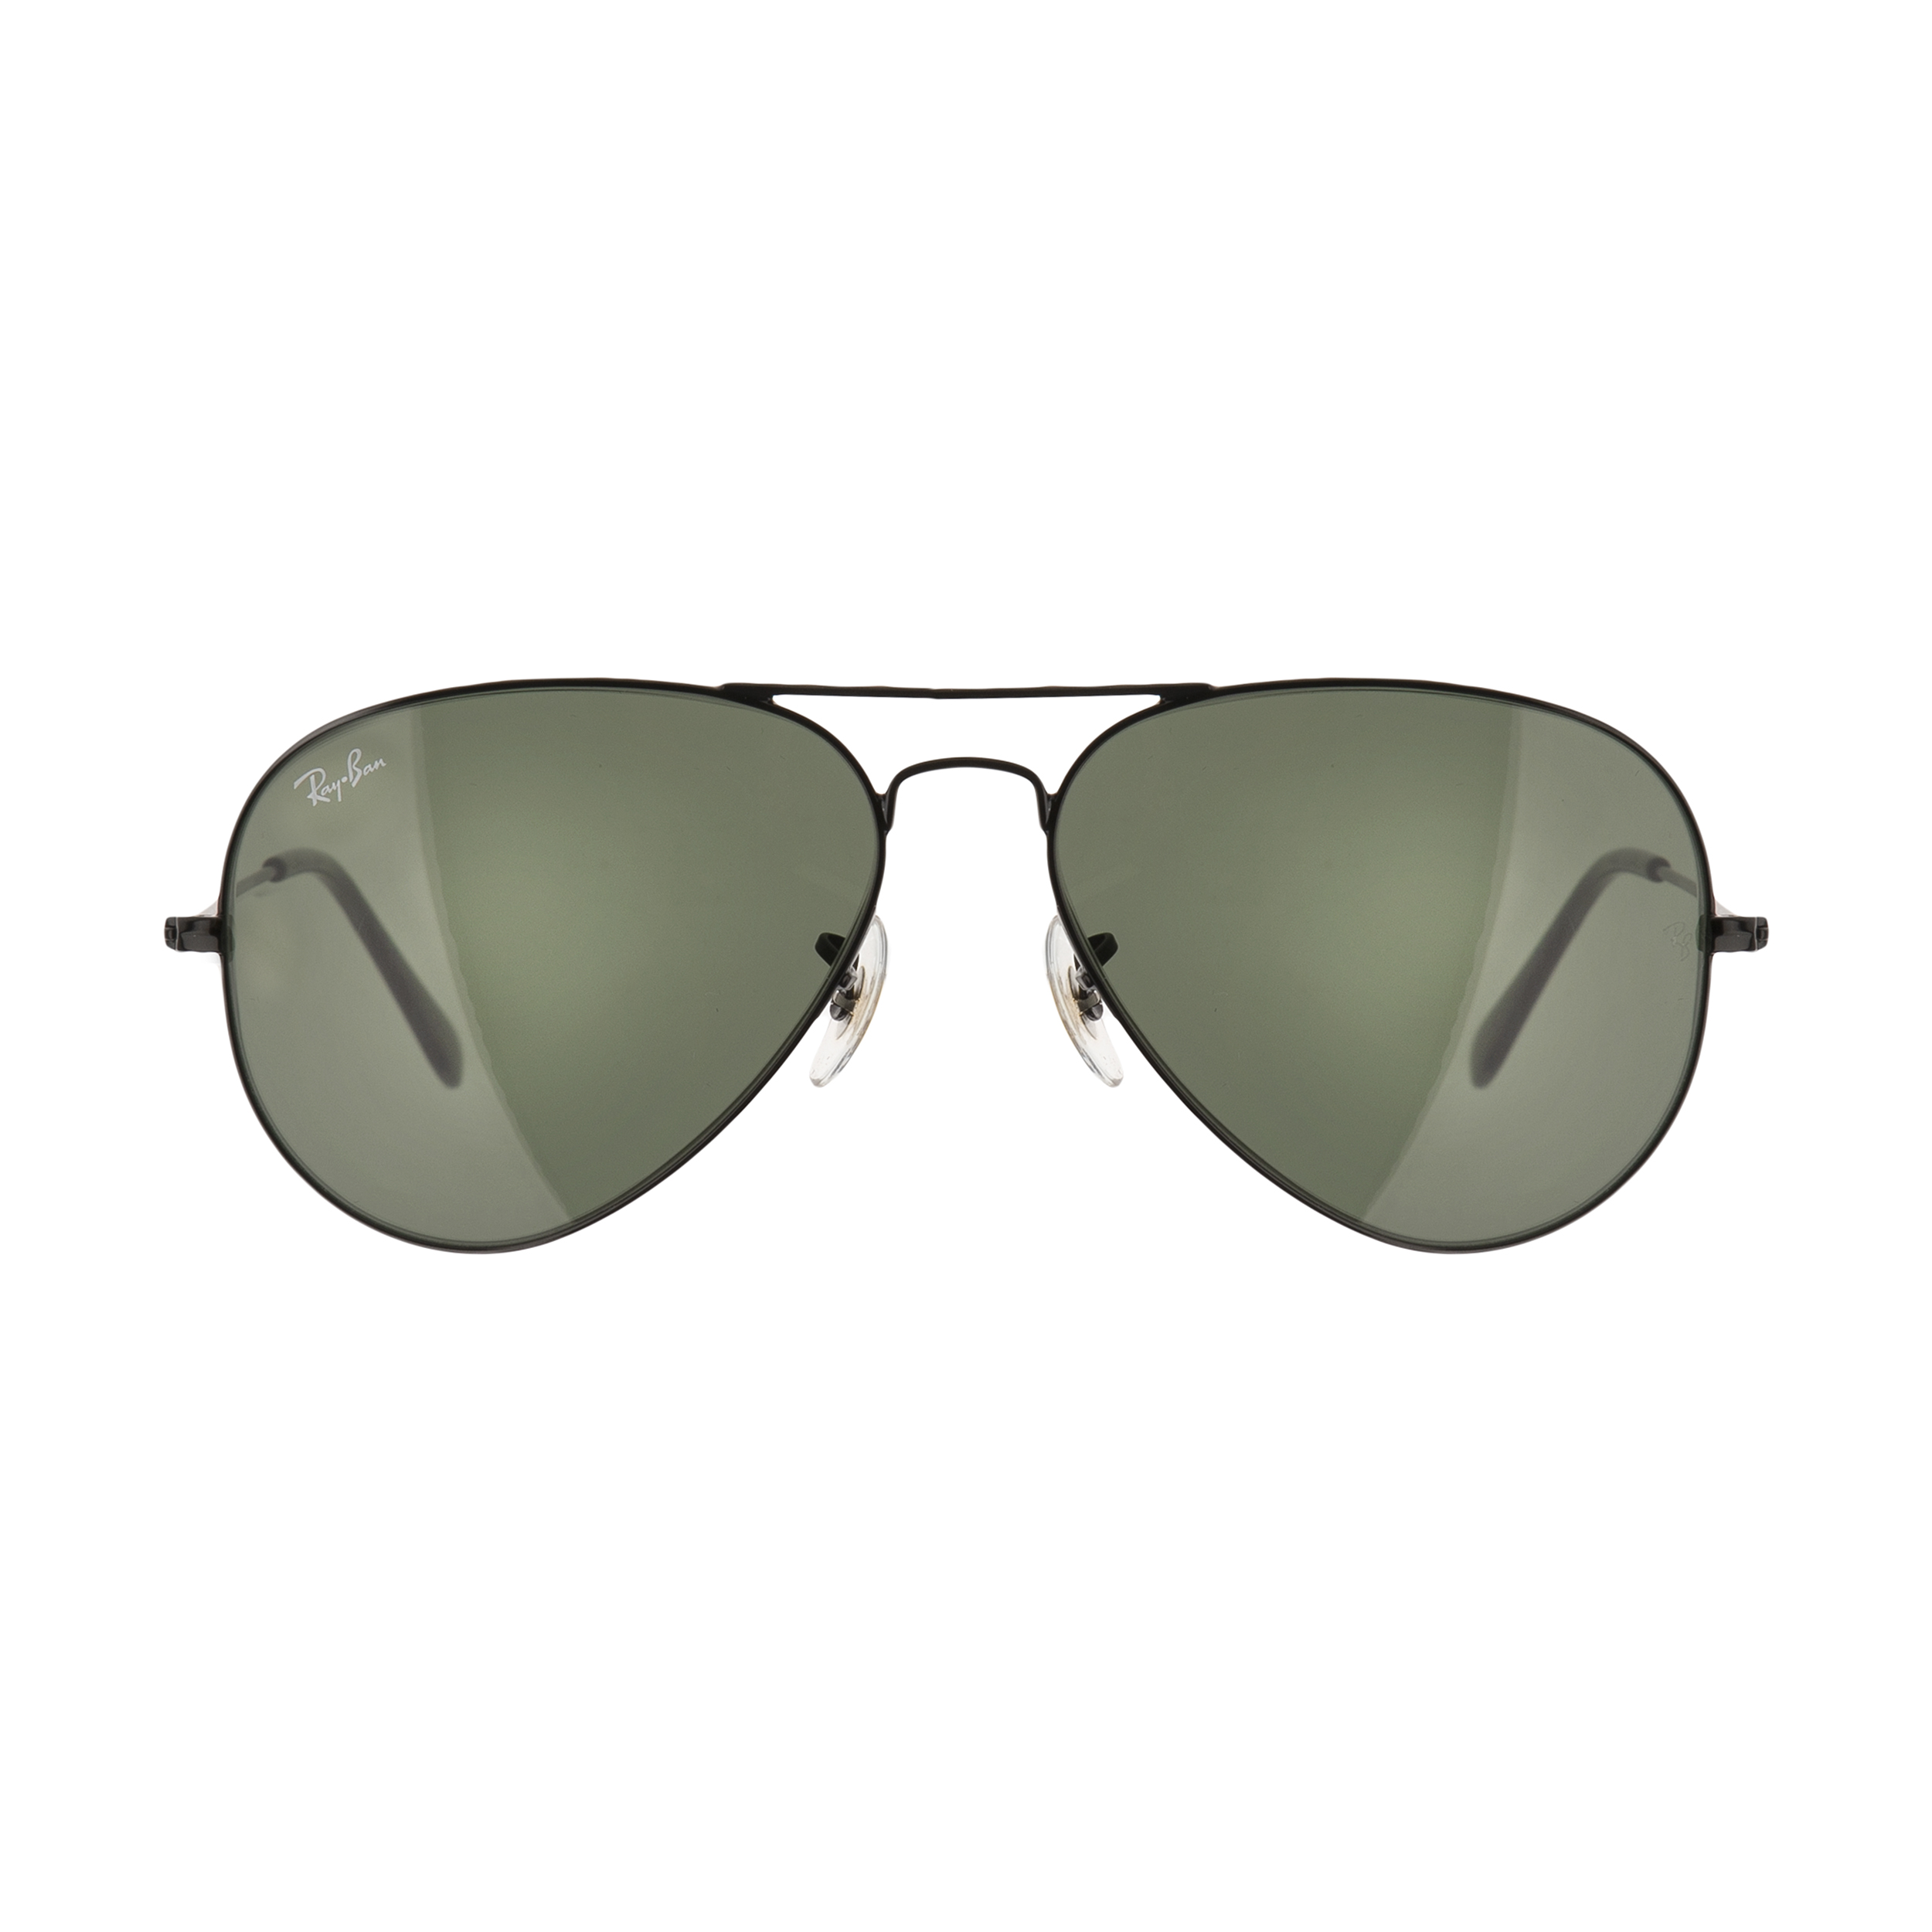 عینک آفتابی ری بن مدل 3025-l2823-58 -  - 1